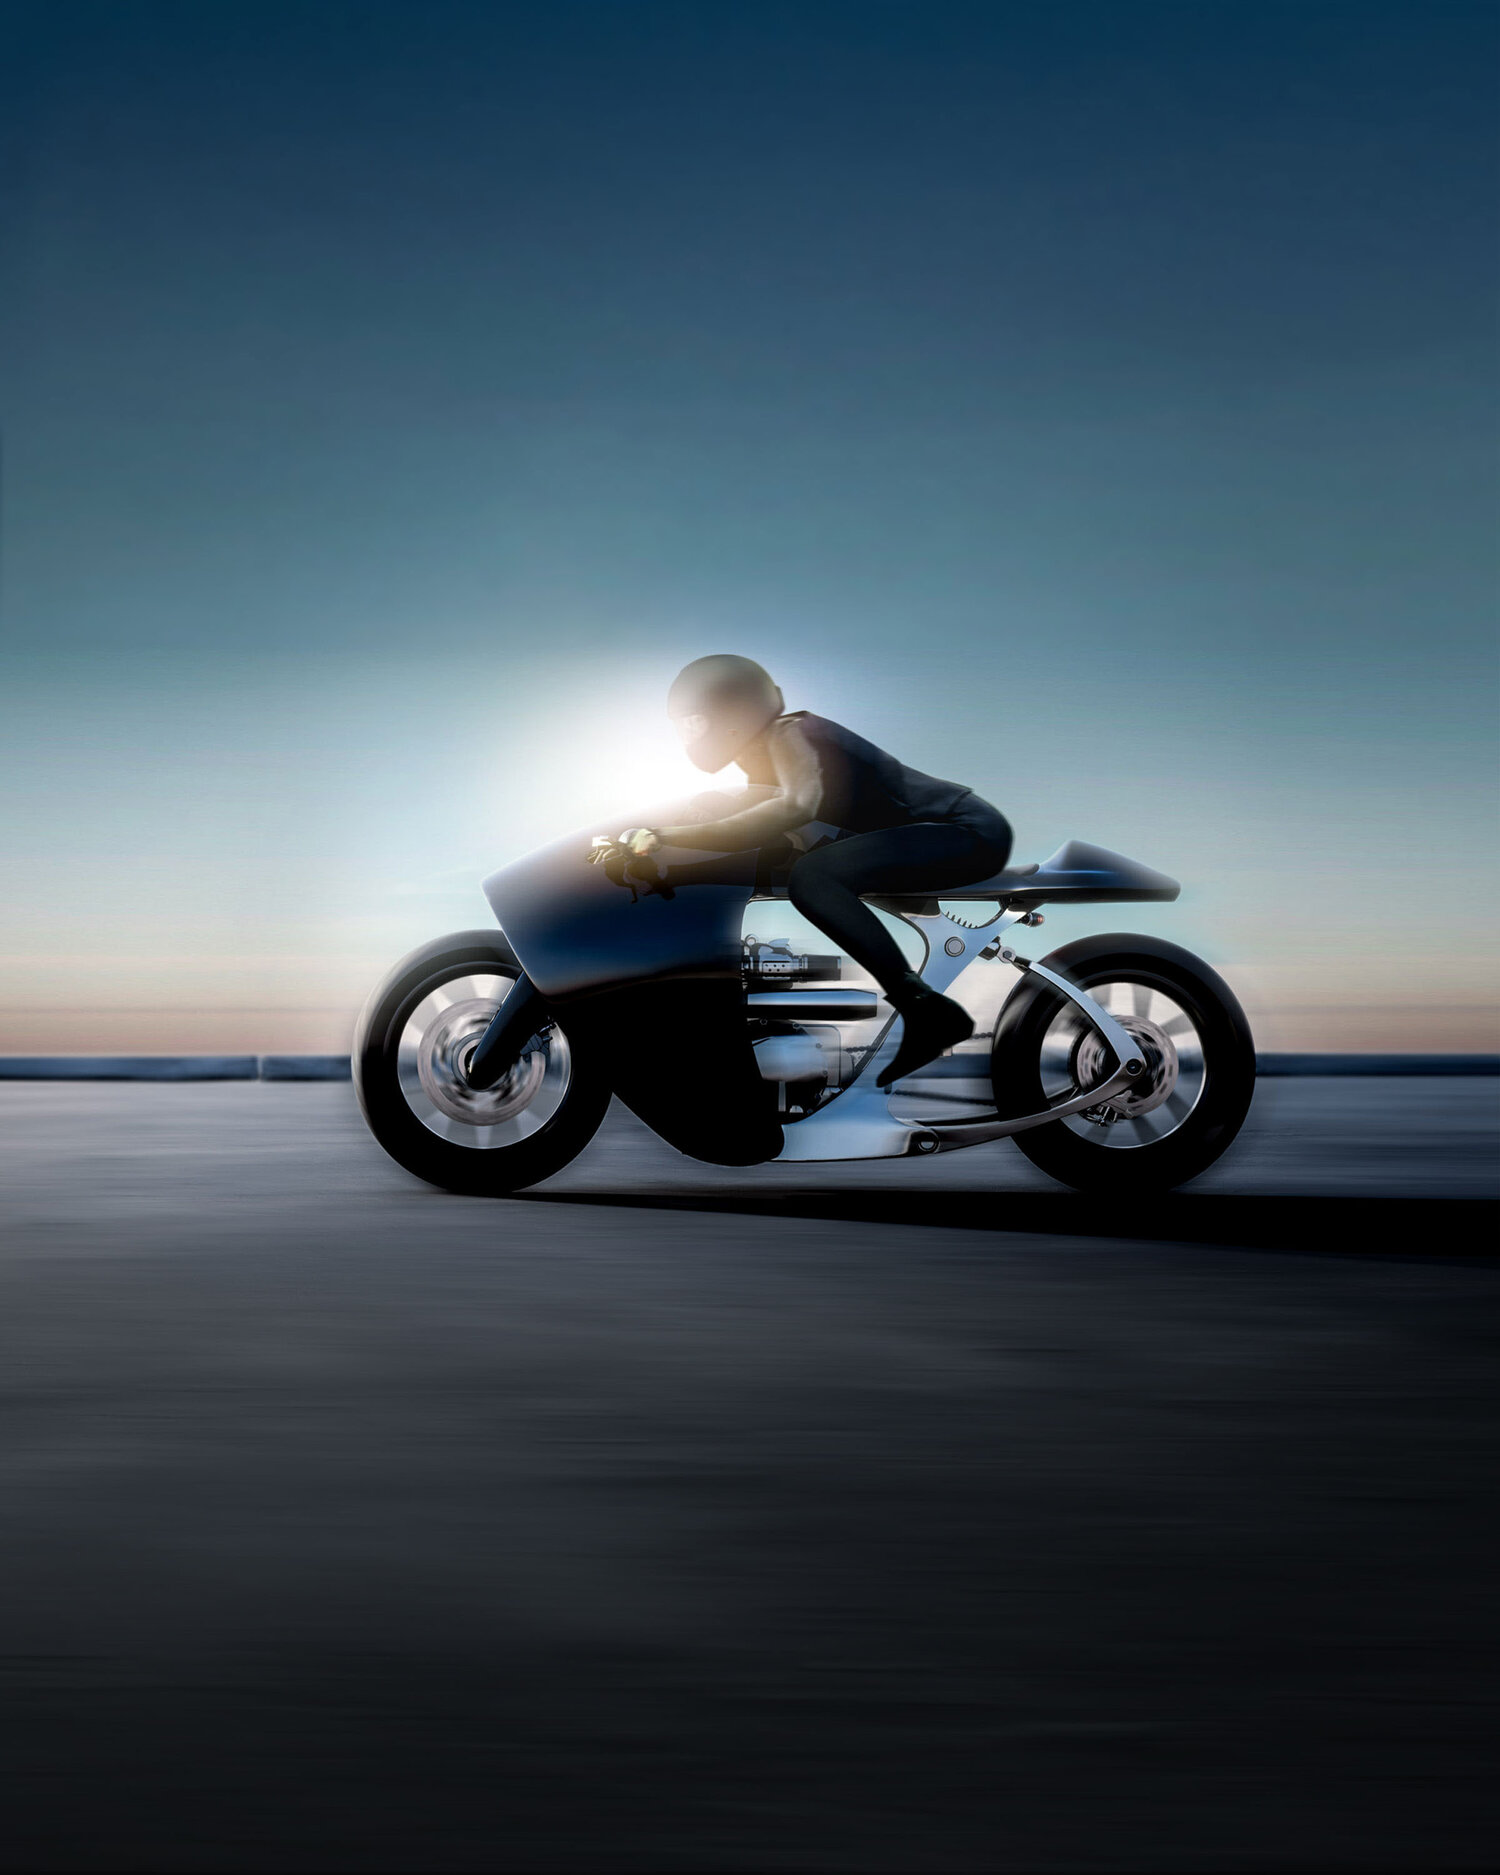 imagen 5 de The Supermarine. La nueva y espectacular motocicleta de Bandit9.